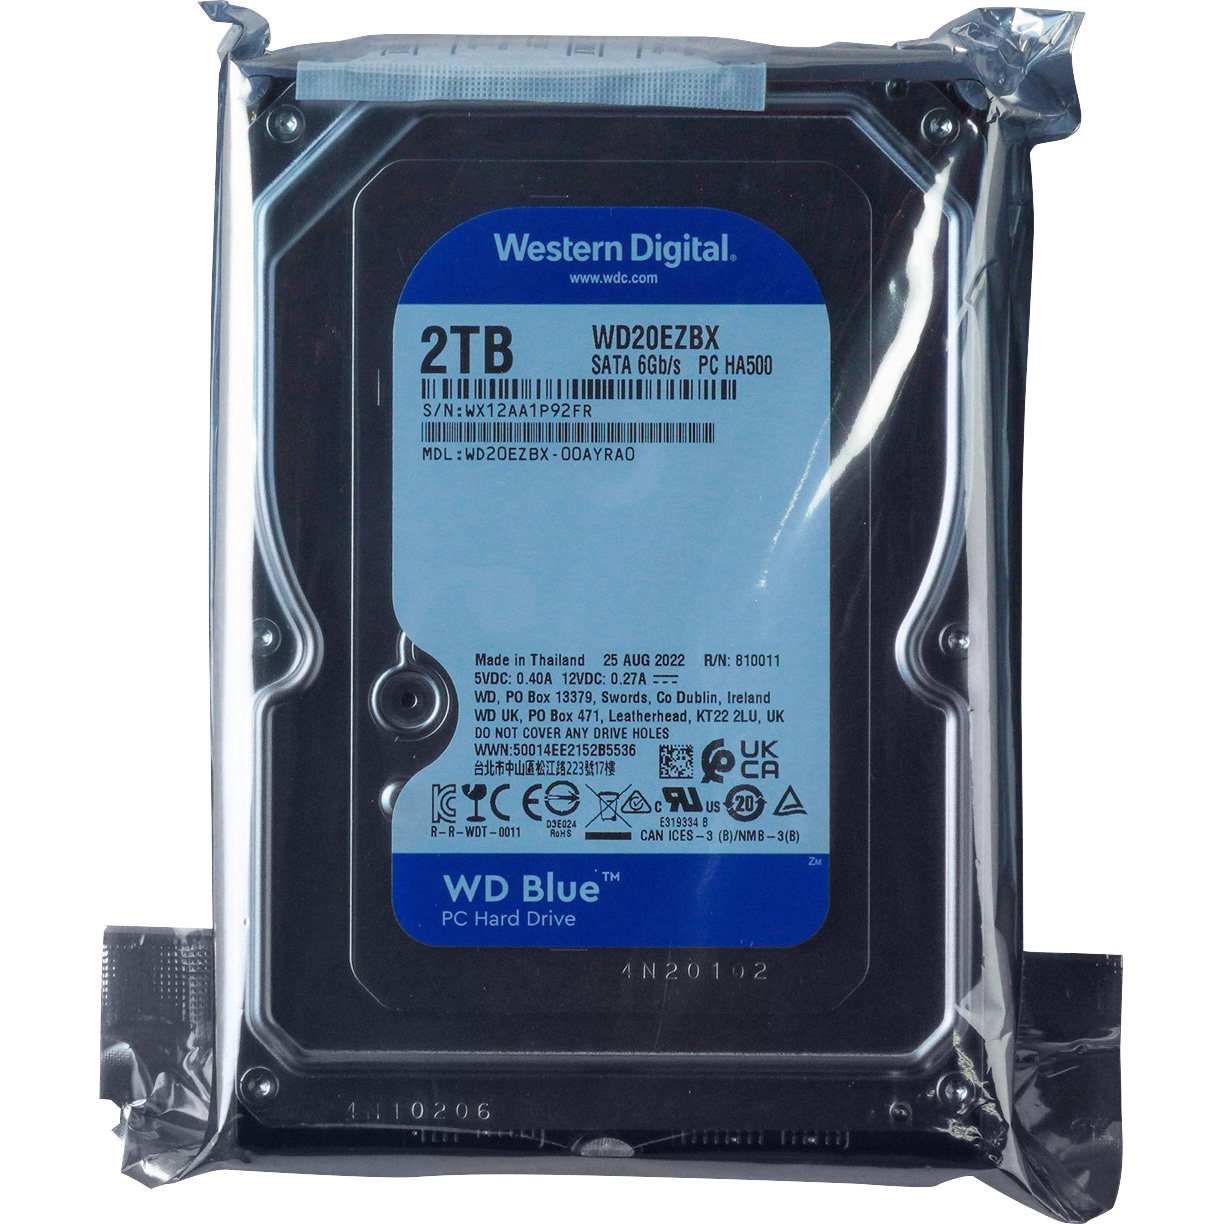 3.5インチ2TBハードディスクHDD - タブレット